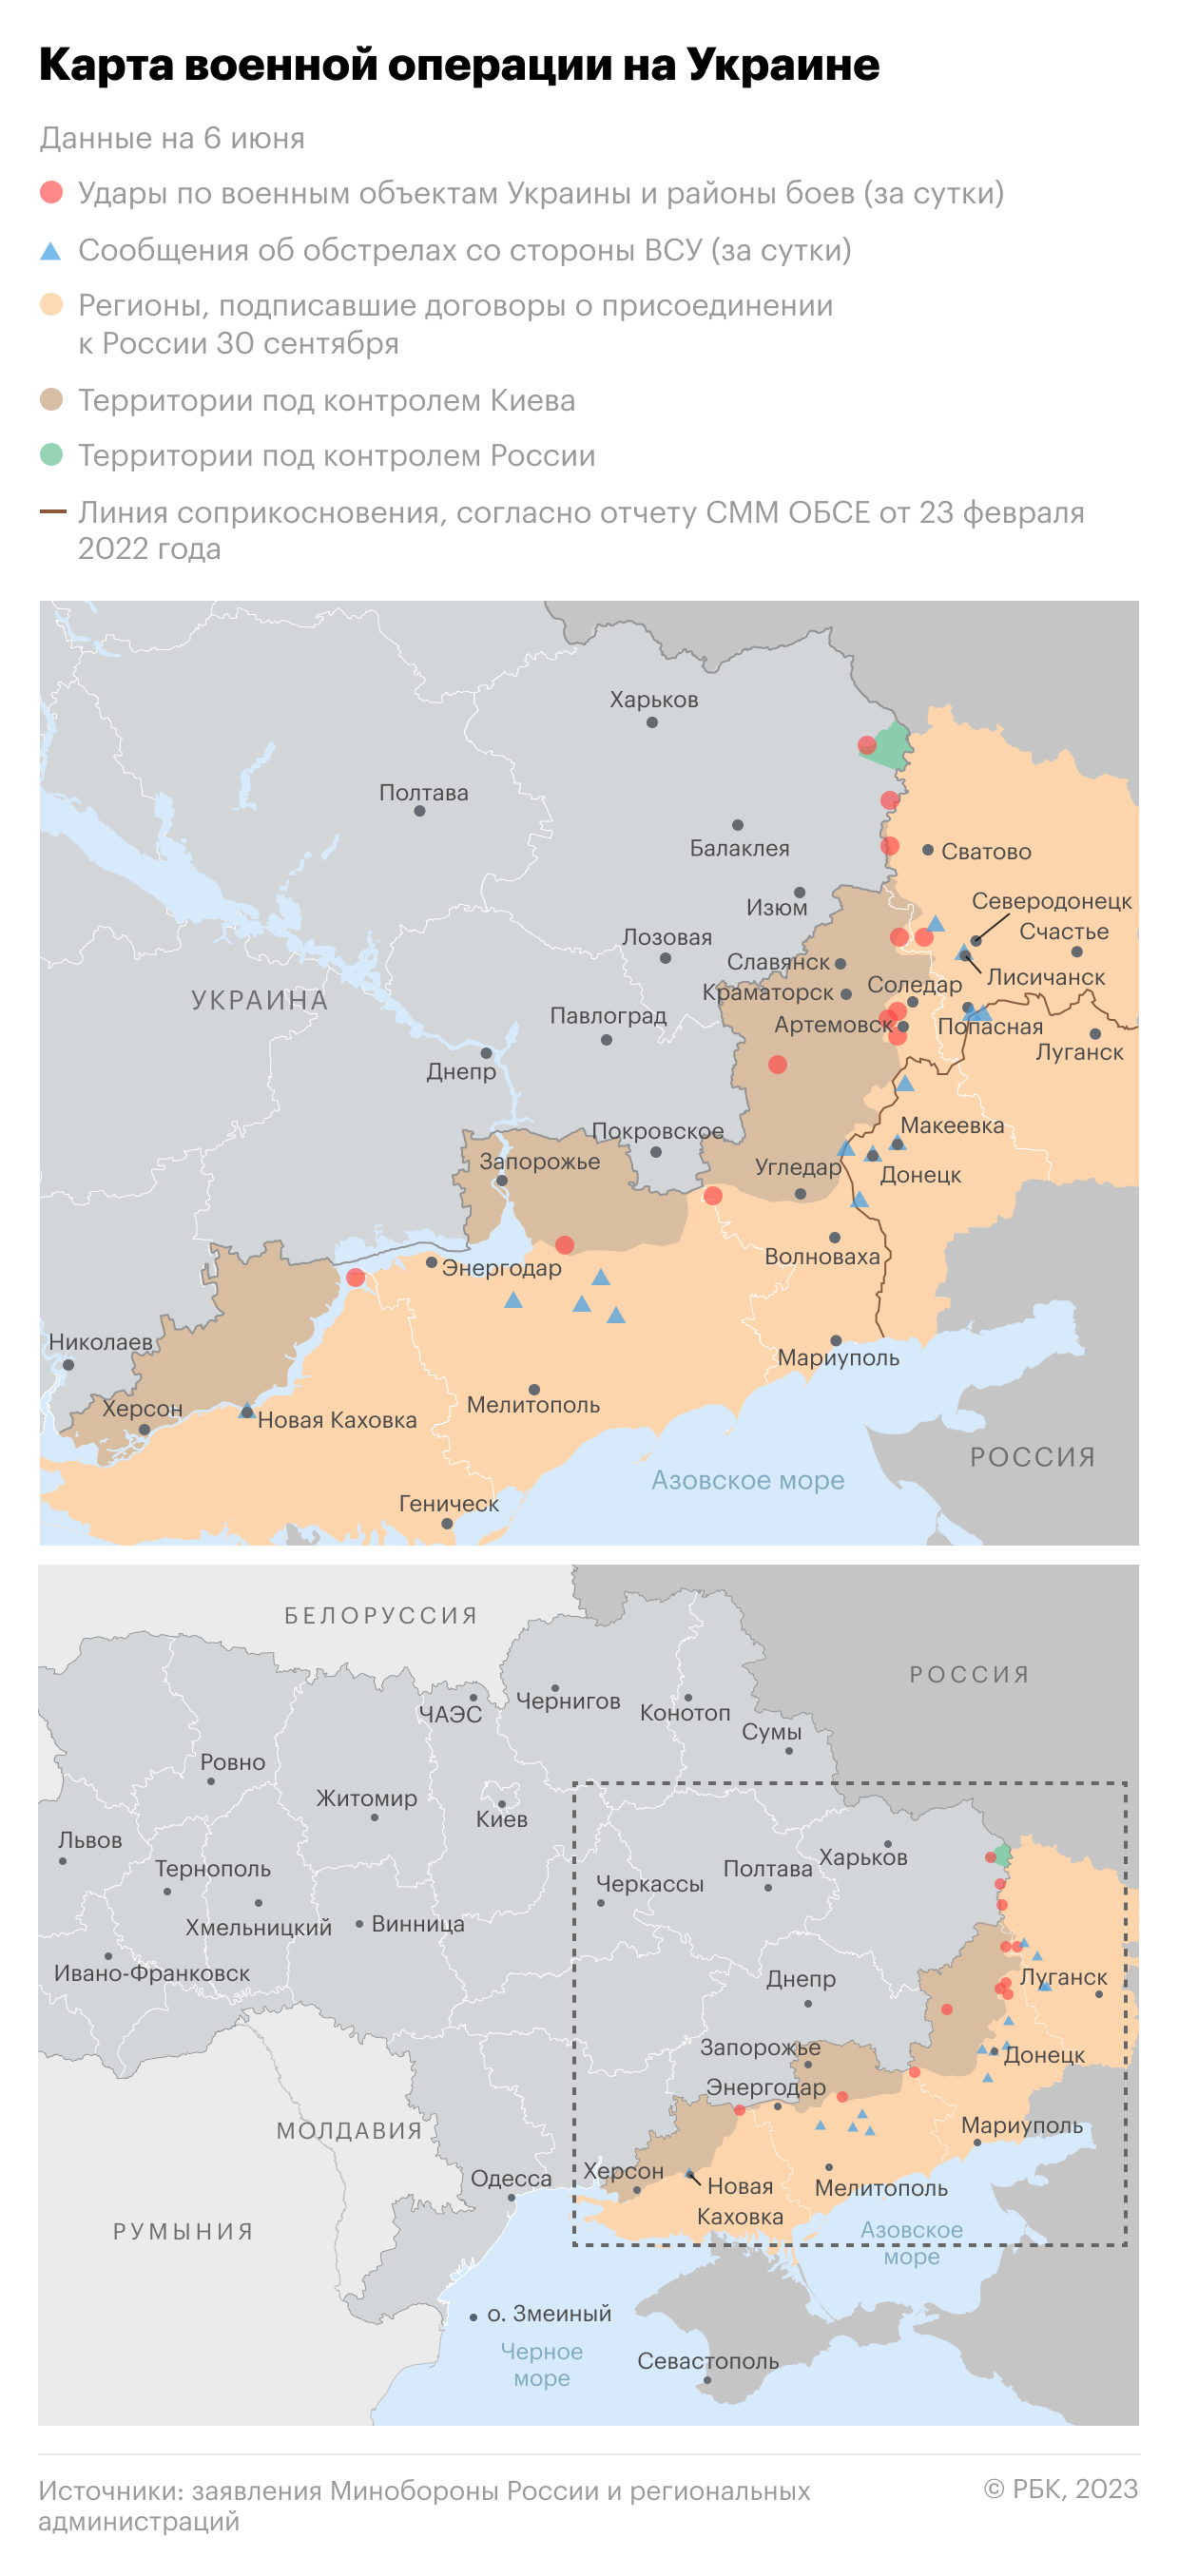 Военные сообщили о ликвидации трех опорных пунктов ВСУ в ДНР